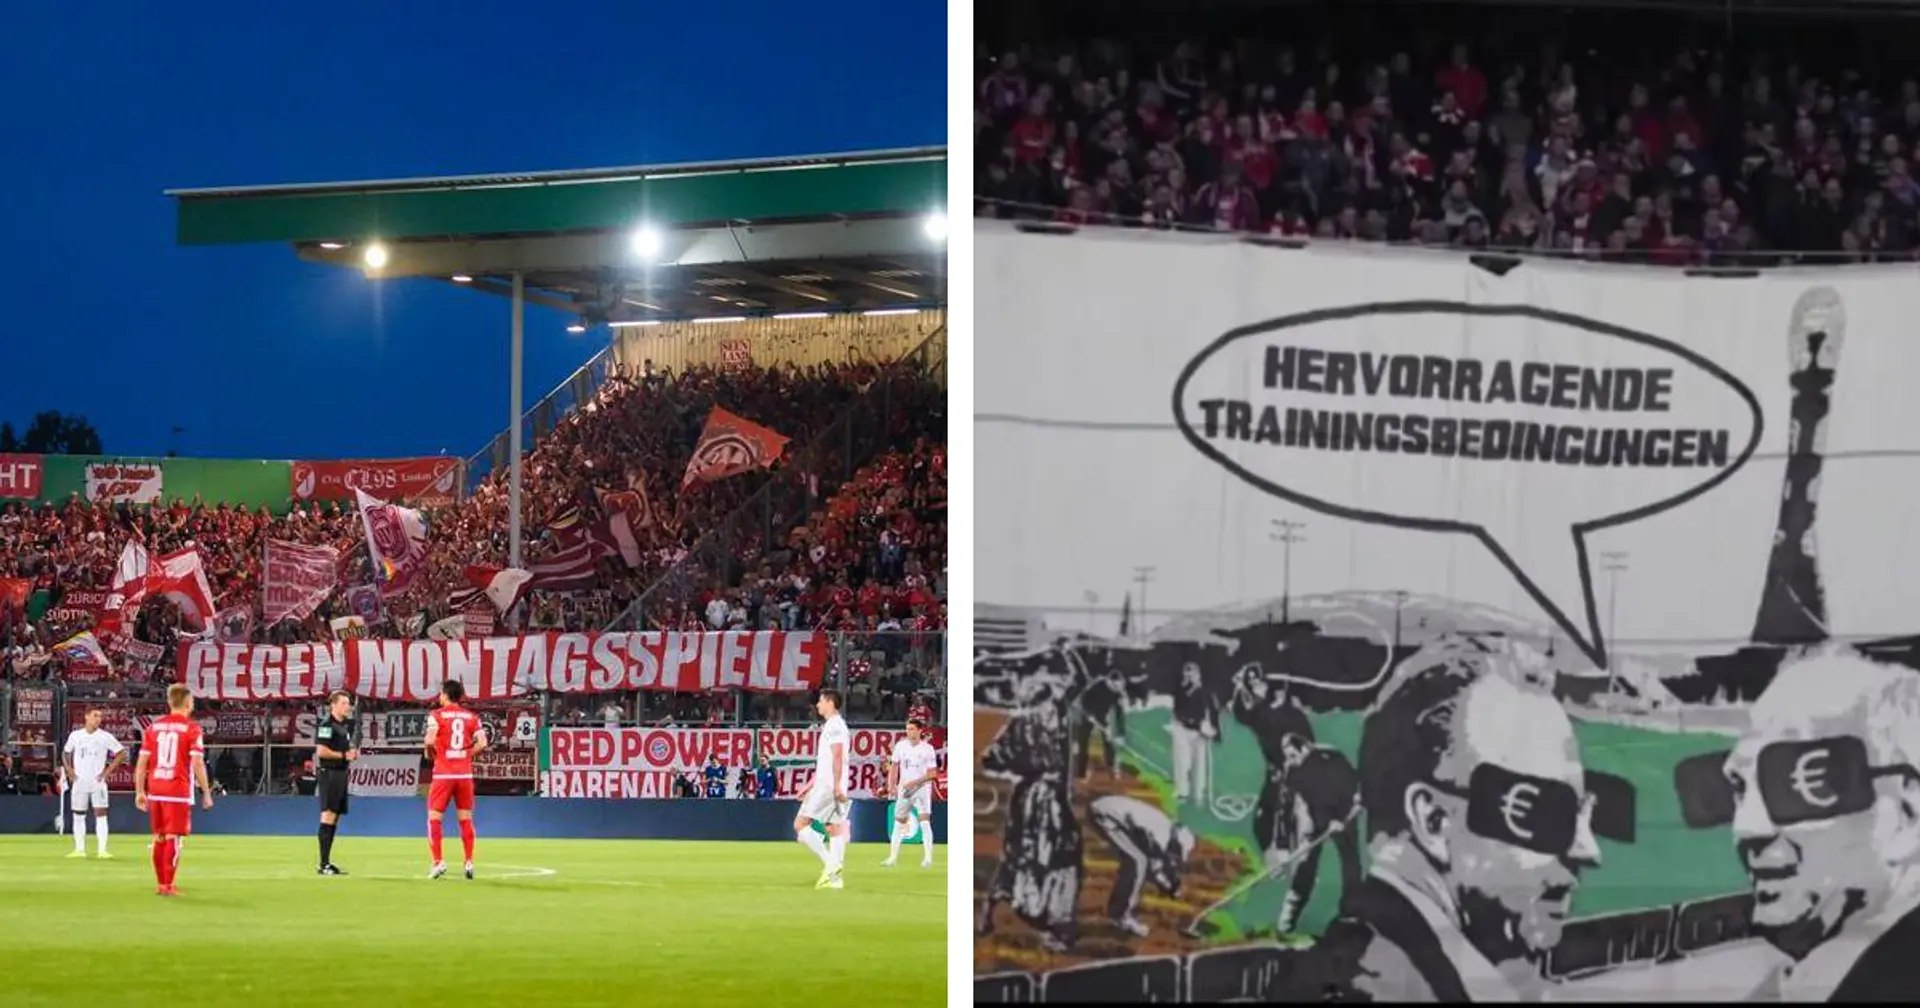 Blog-Post | "Es ist nicht alles Rot-Weiß, was glänzt": Bayern-Fan kritisiert den Verein wegen Hausverbot 